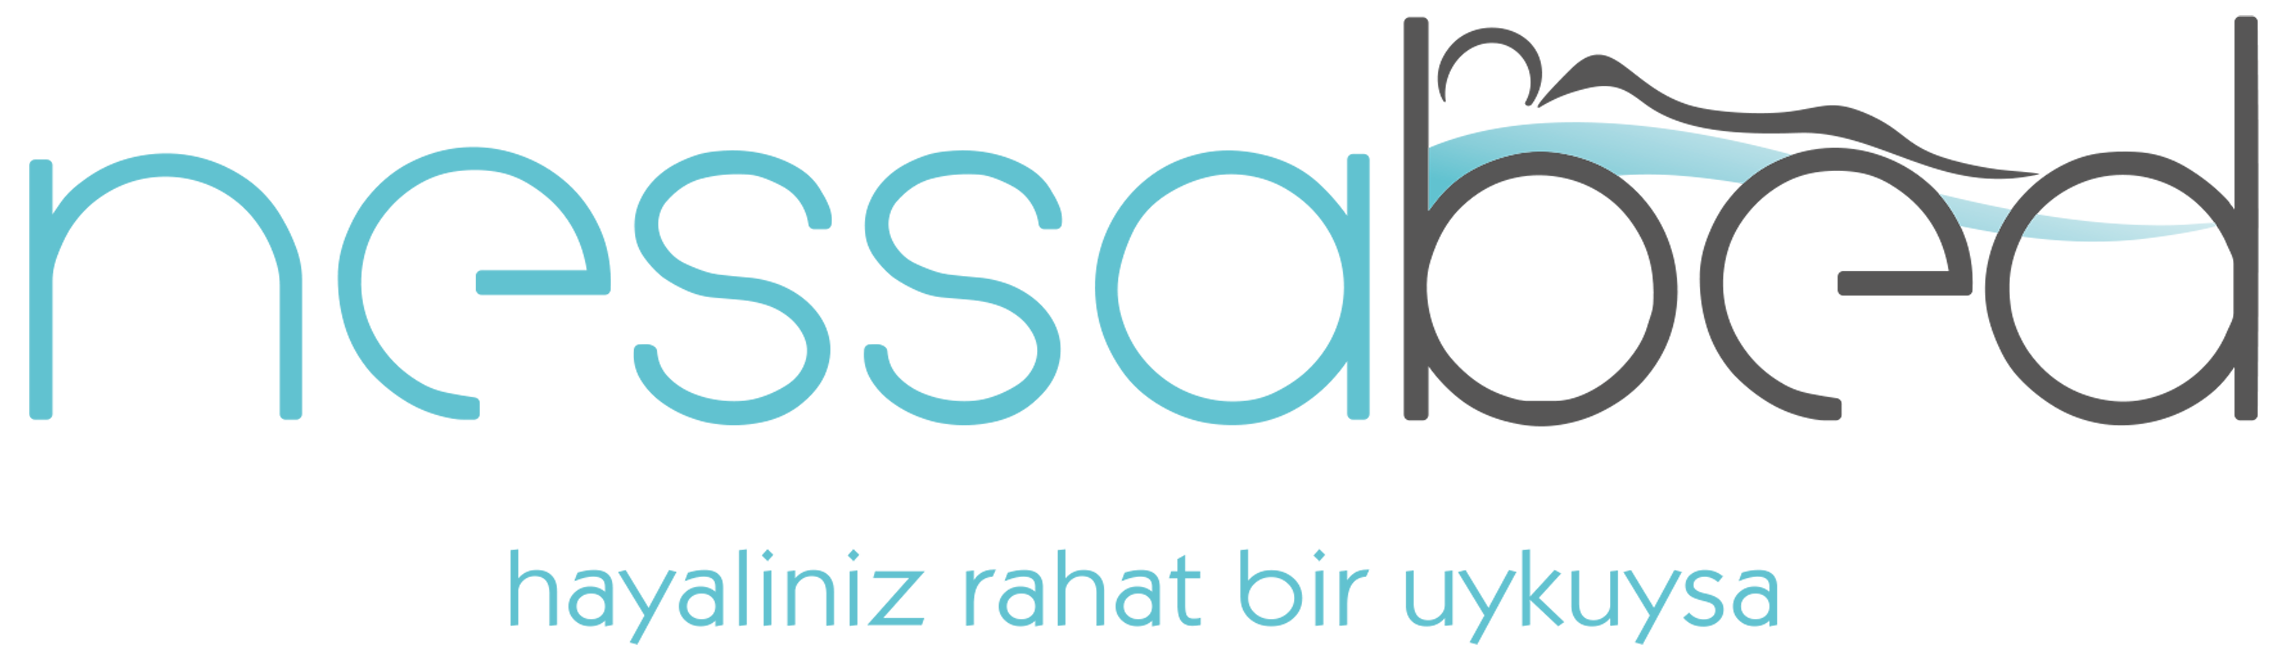 header-logo.svg